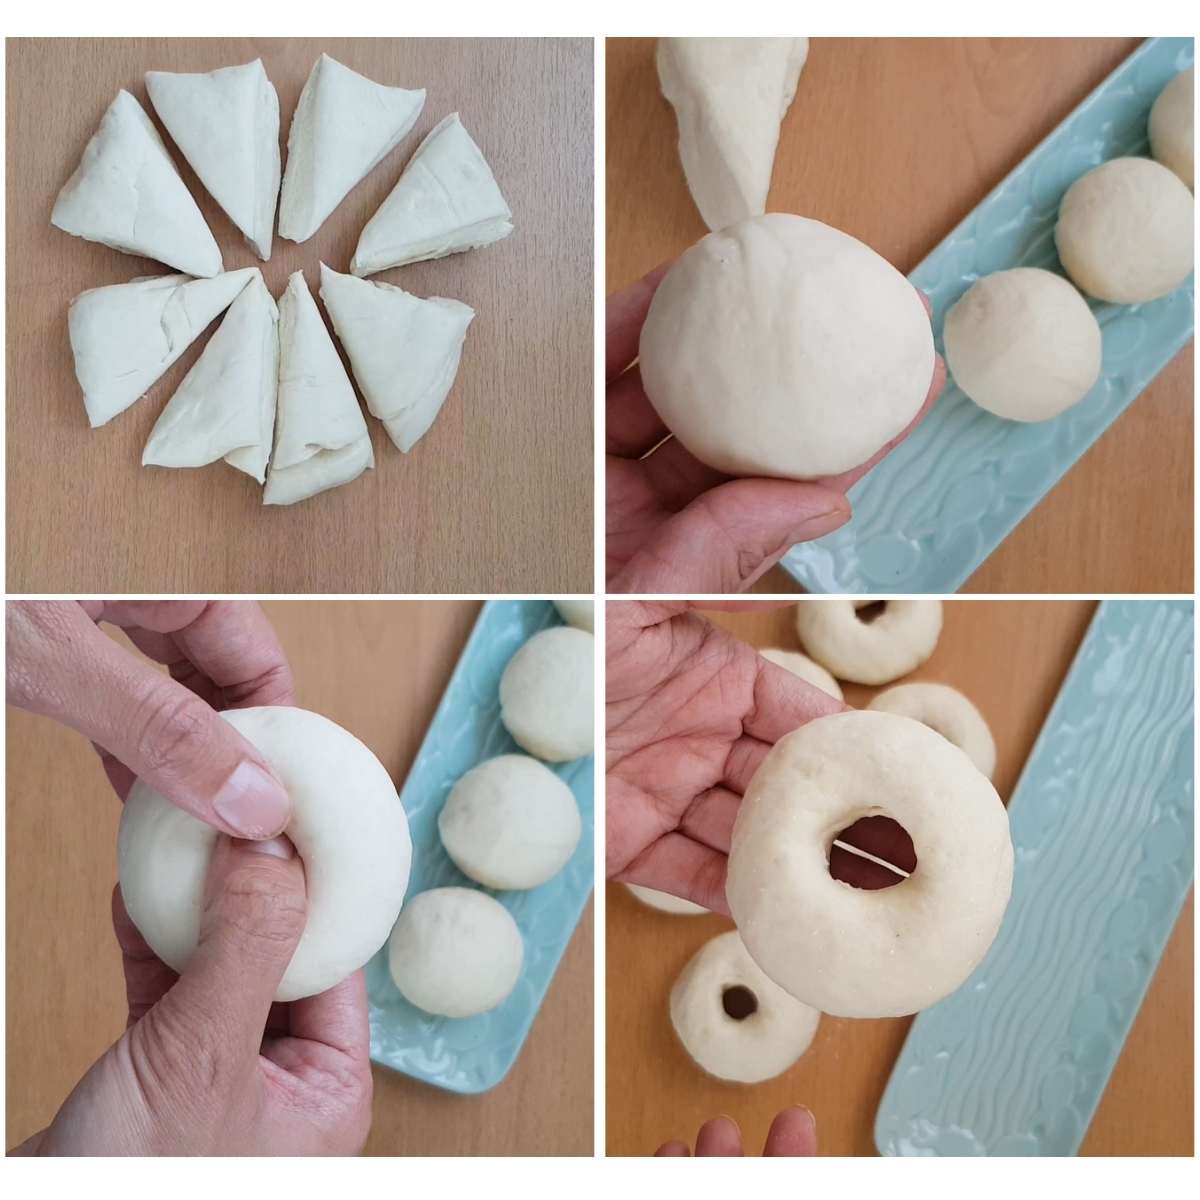 making dough balls and bagel ring shapes process shots